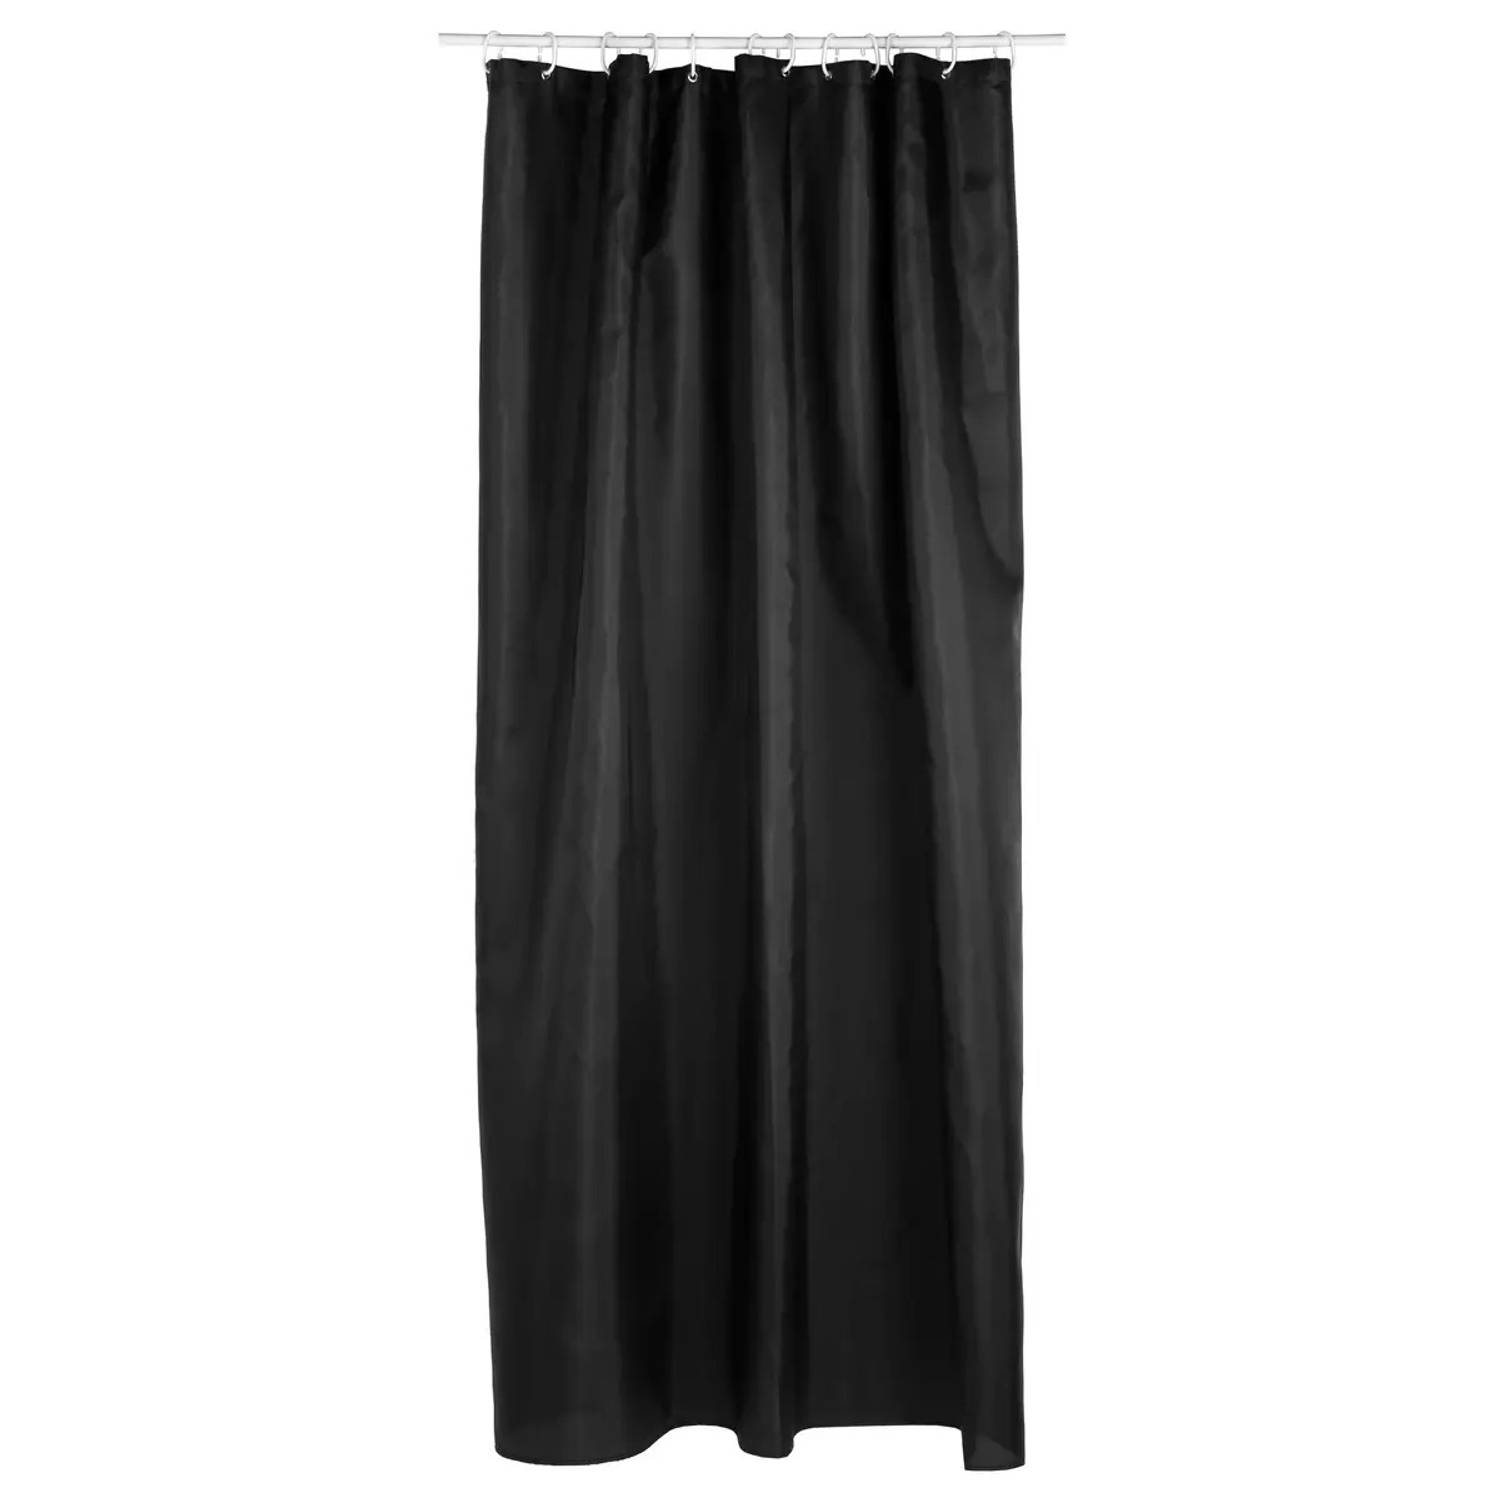 5Five Douchegordijn zwart polyester 180 x 200 cm inclusief ringen Douchegordijnen